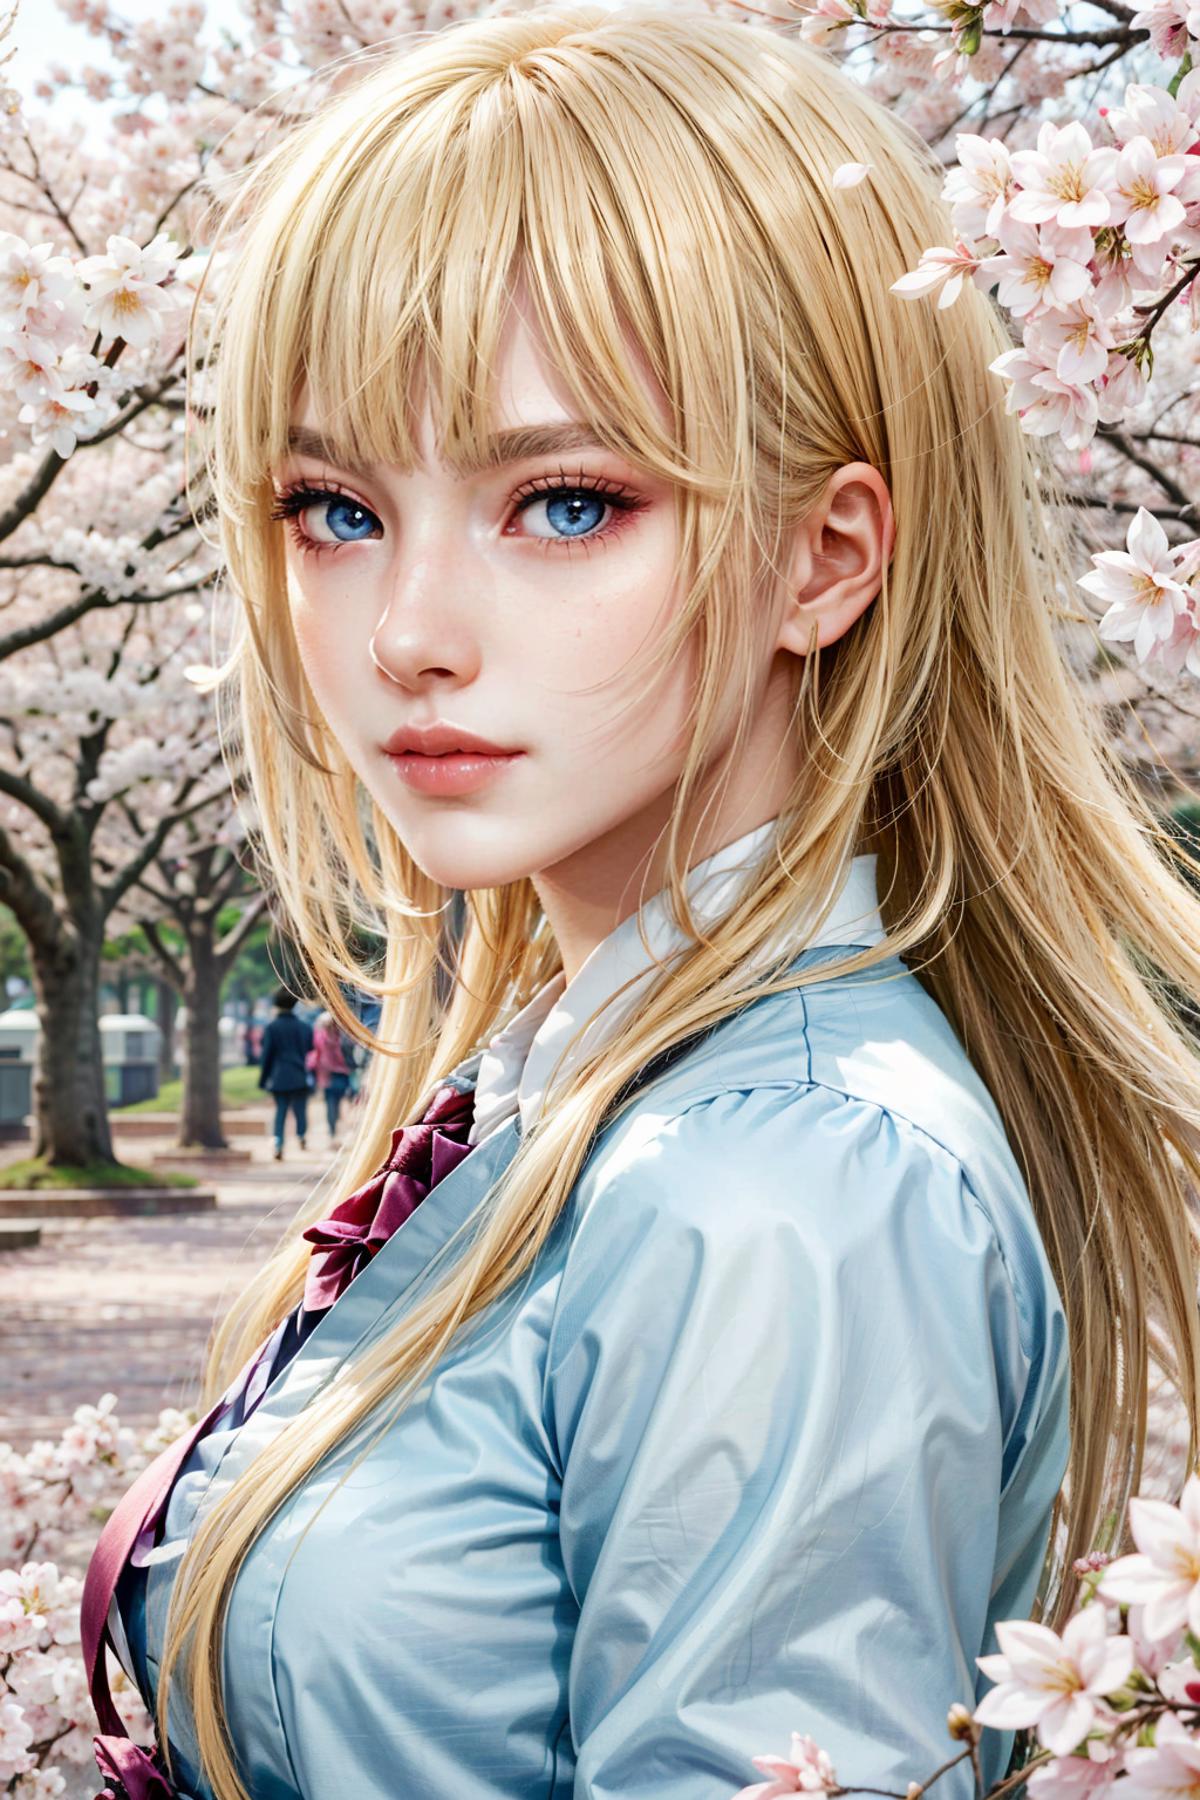 Lili from Tekken image by BloodRedKittie